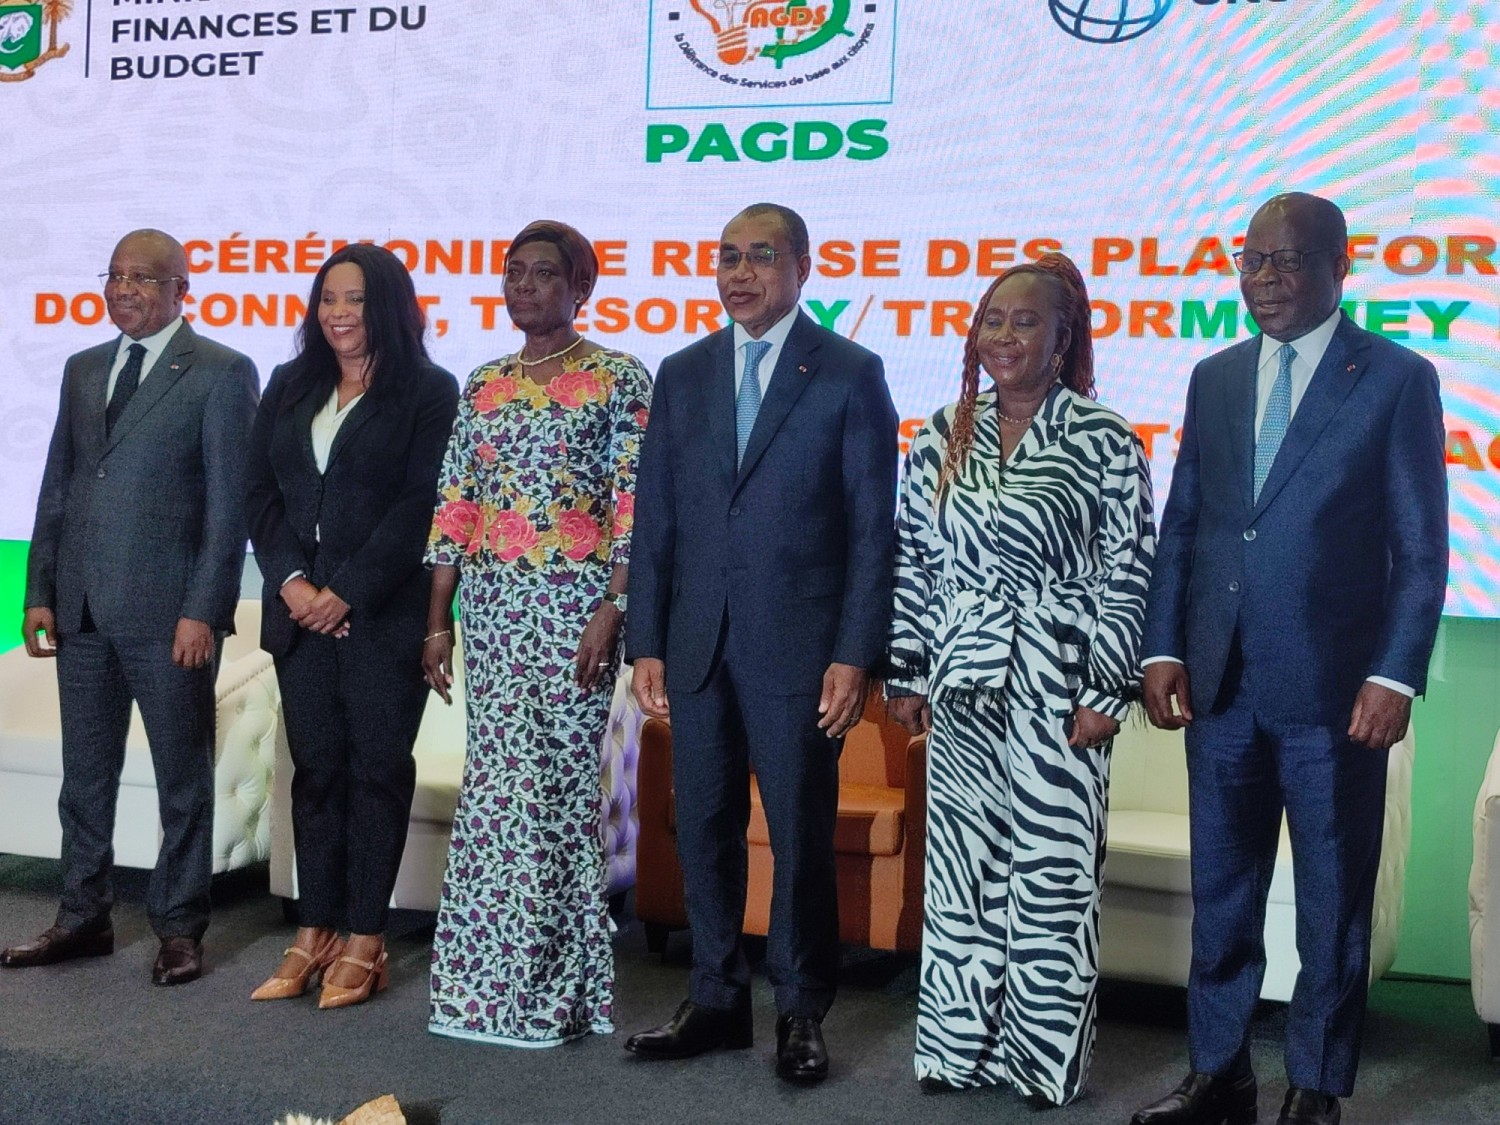 Côte d'Ivoire : Digitalisation des services publics, quatre ministères reçoivent des plateformes numériques pour davantage booster leurs performances